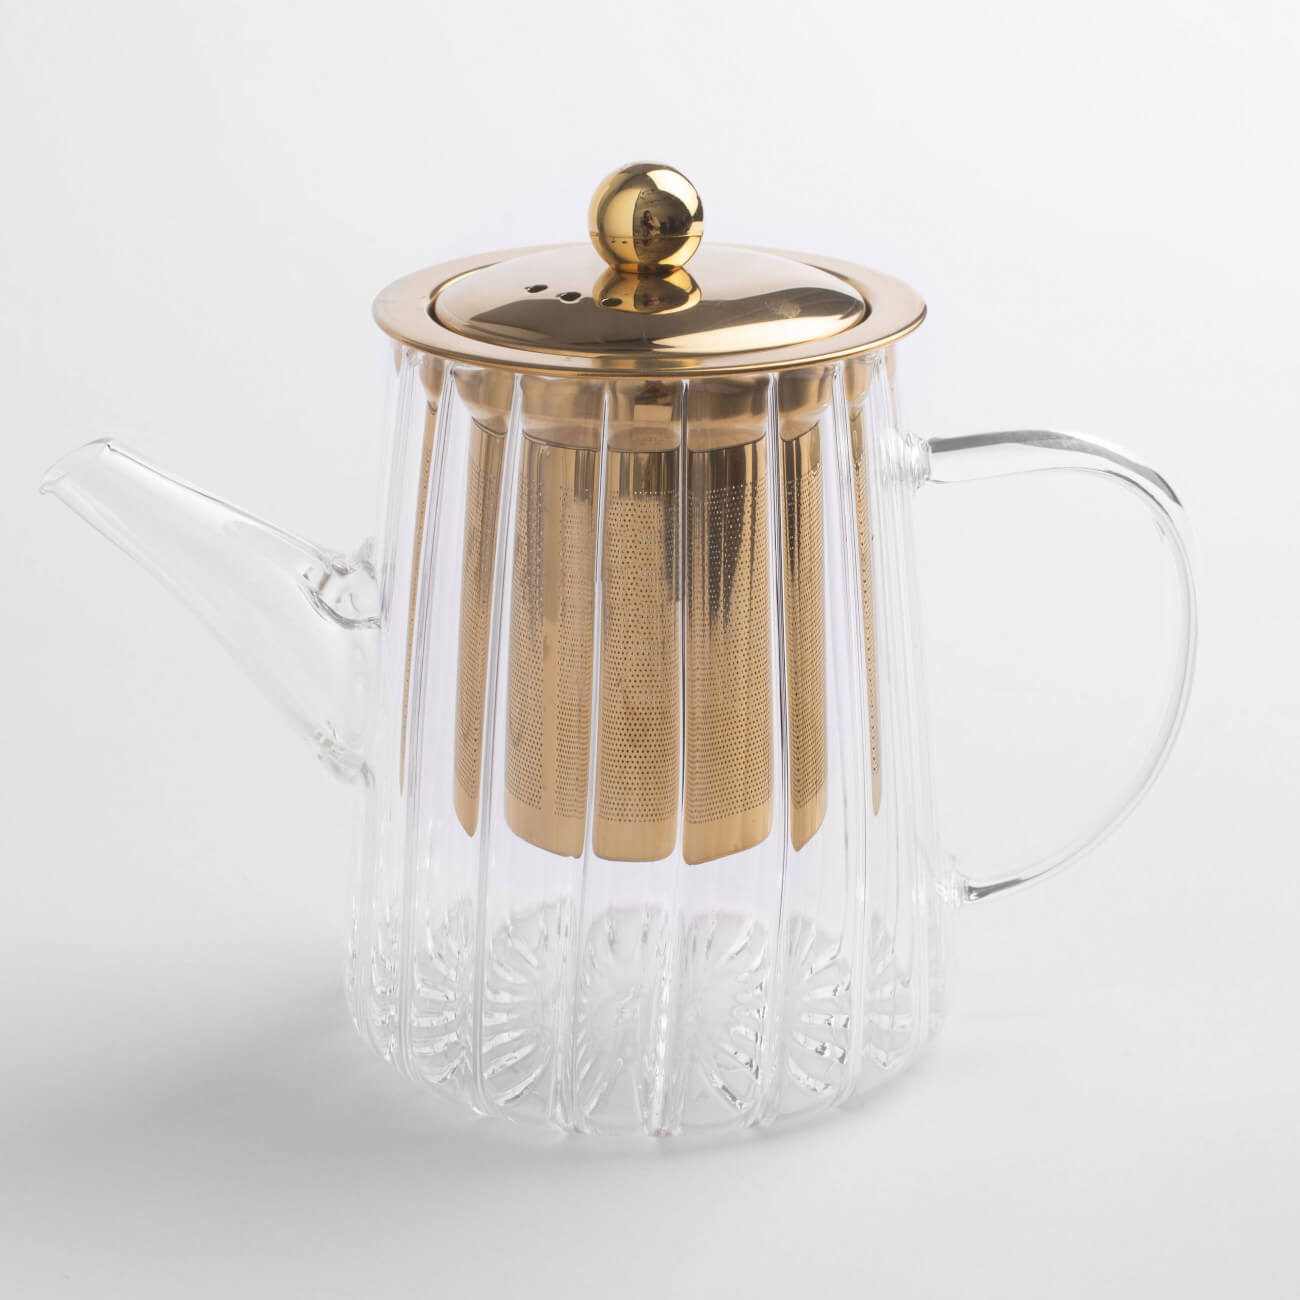 Чайник заварочный, 600 мл, стекло Б/сталь, золотистый, Camellia gold чайник заварочный wilmax 850 мл